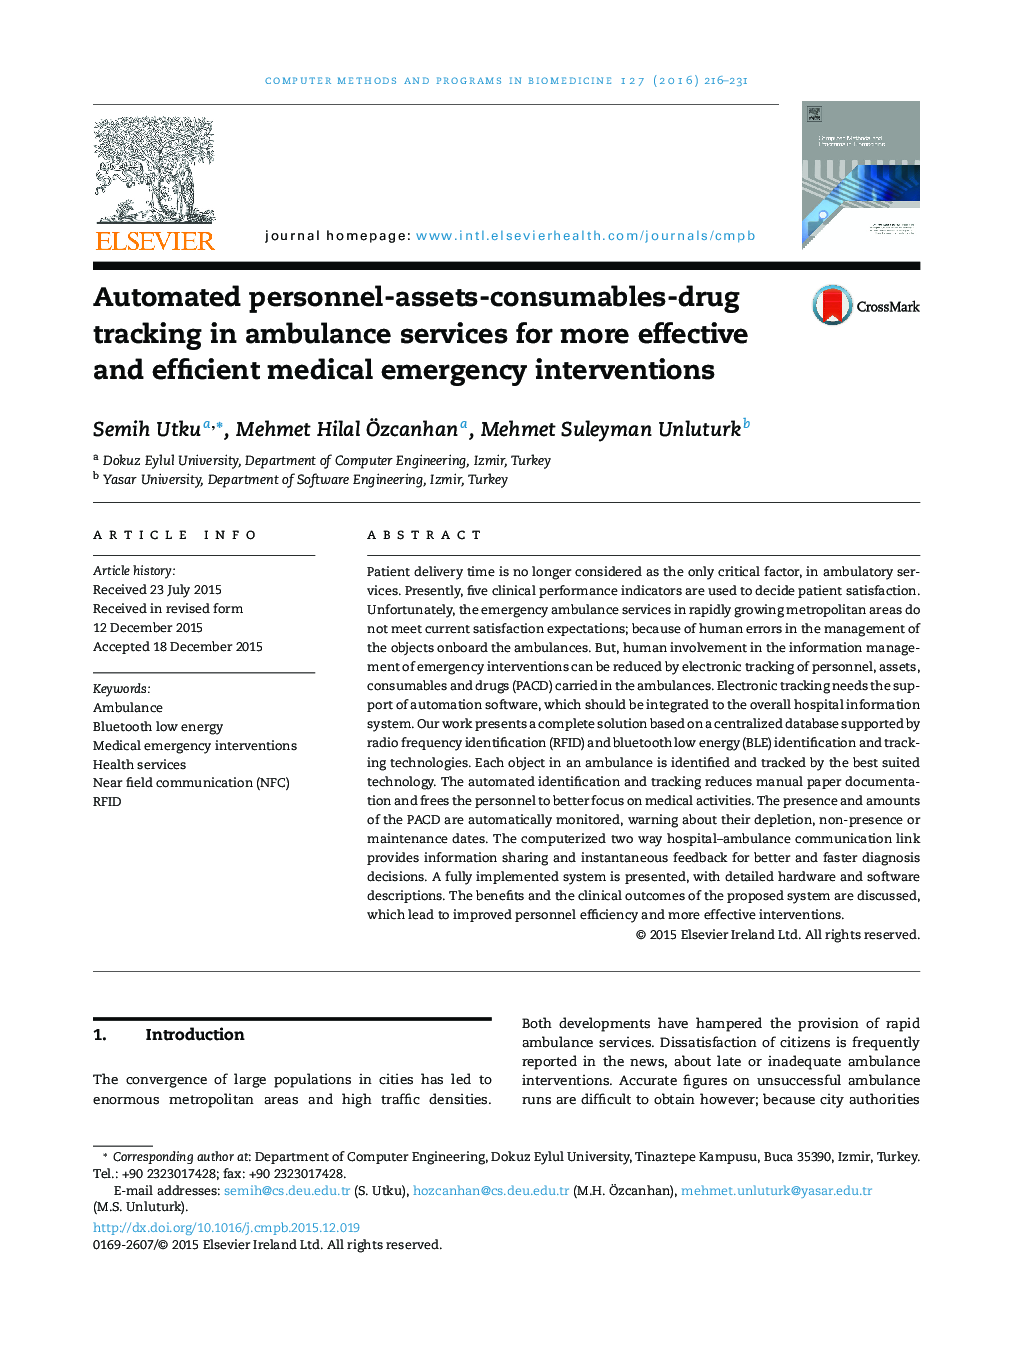 ردیابی خودکار پرسنل دارایی - مواد مصرفی - دارو در خدمات آمبولانس برای مداخلات اورژانسی موثرتر و کارآمدتر 